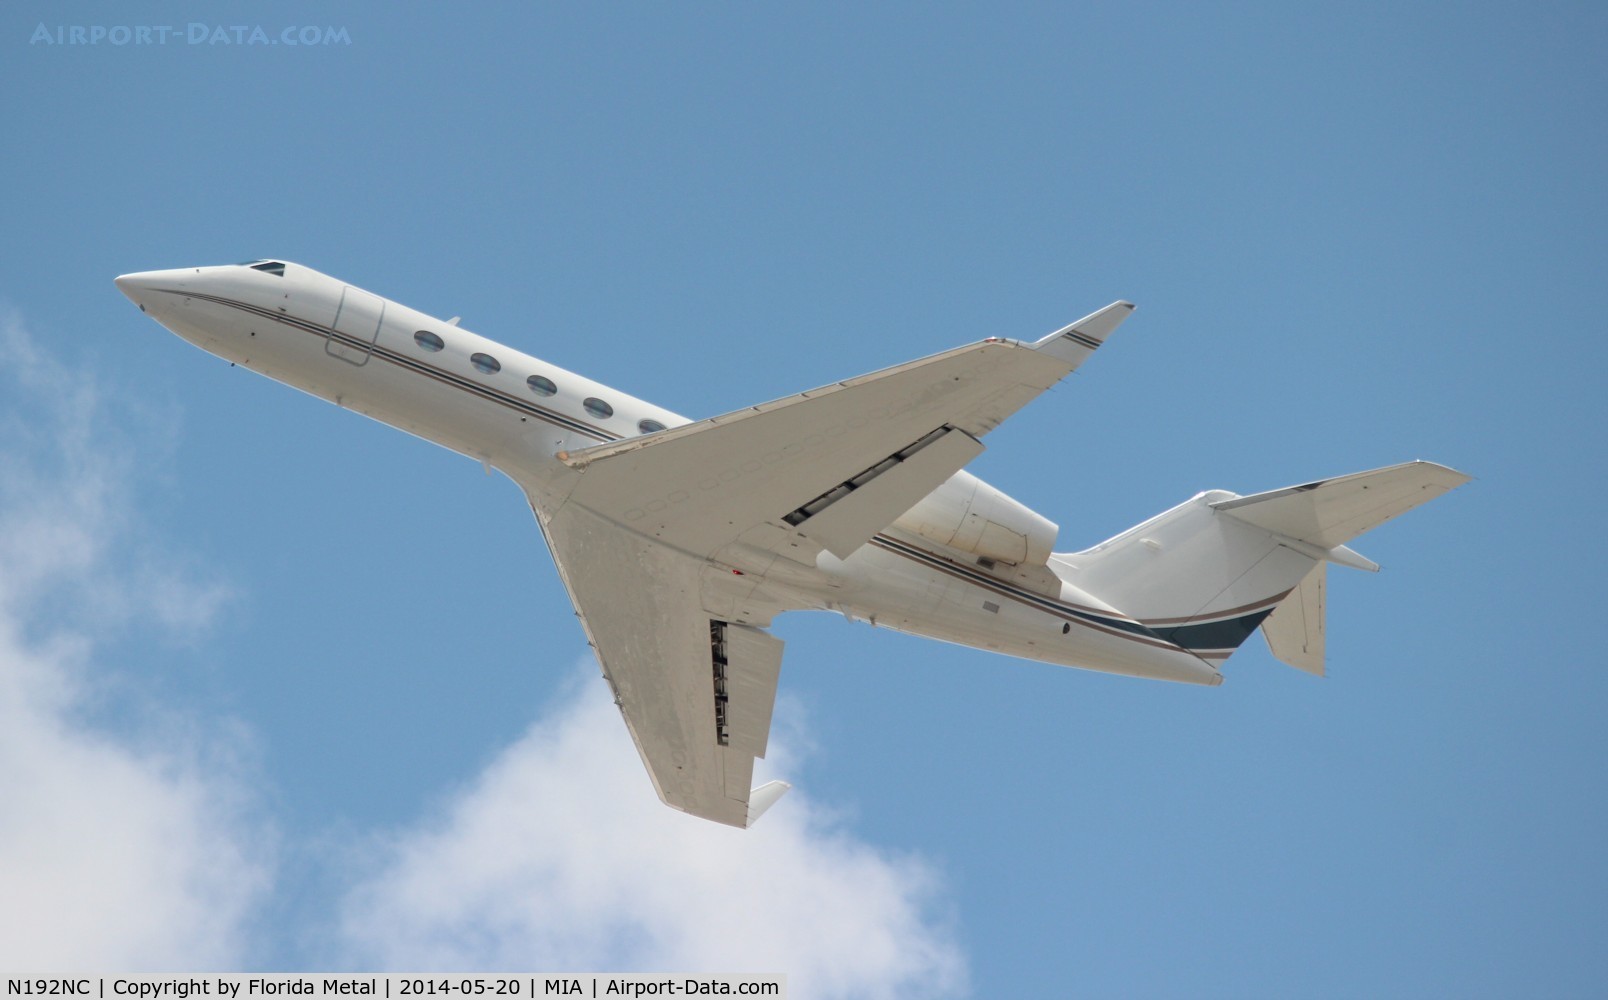 N192NC, 2008 Gulfstream Aerospace GIV-X (G450) C/N 4126, Gulfstream G450